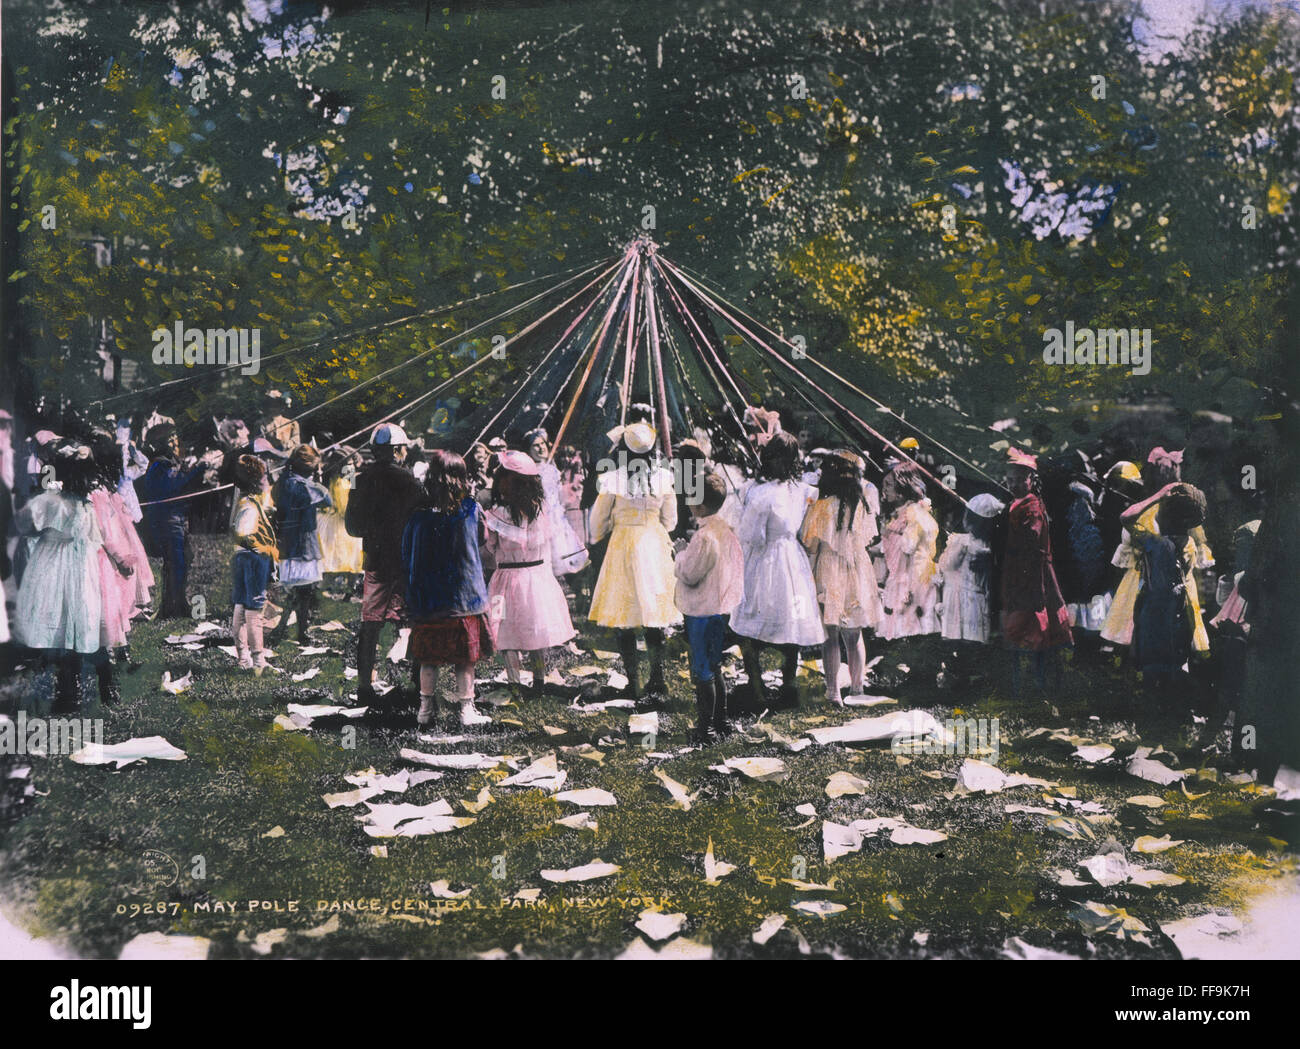 MAYPOLE DANCE, 1905. NChildren /danse autour de l'arbre de mai dans Central Park, New York City. Huile à une photographie, 1905. Banque D'Images